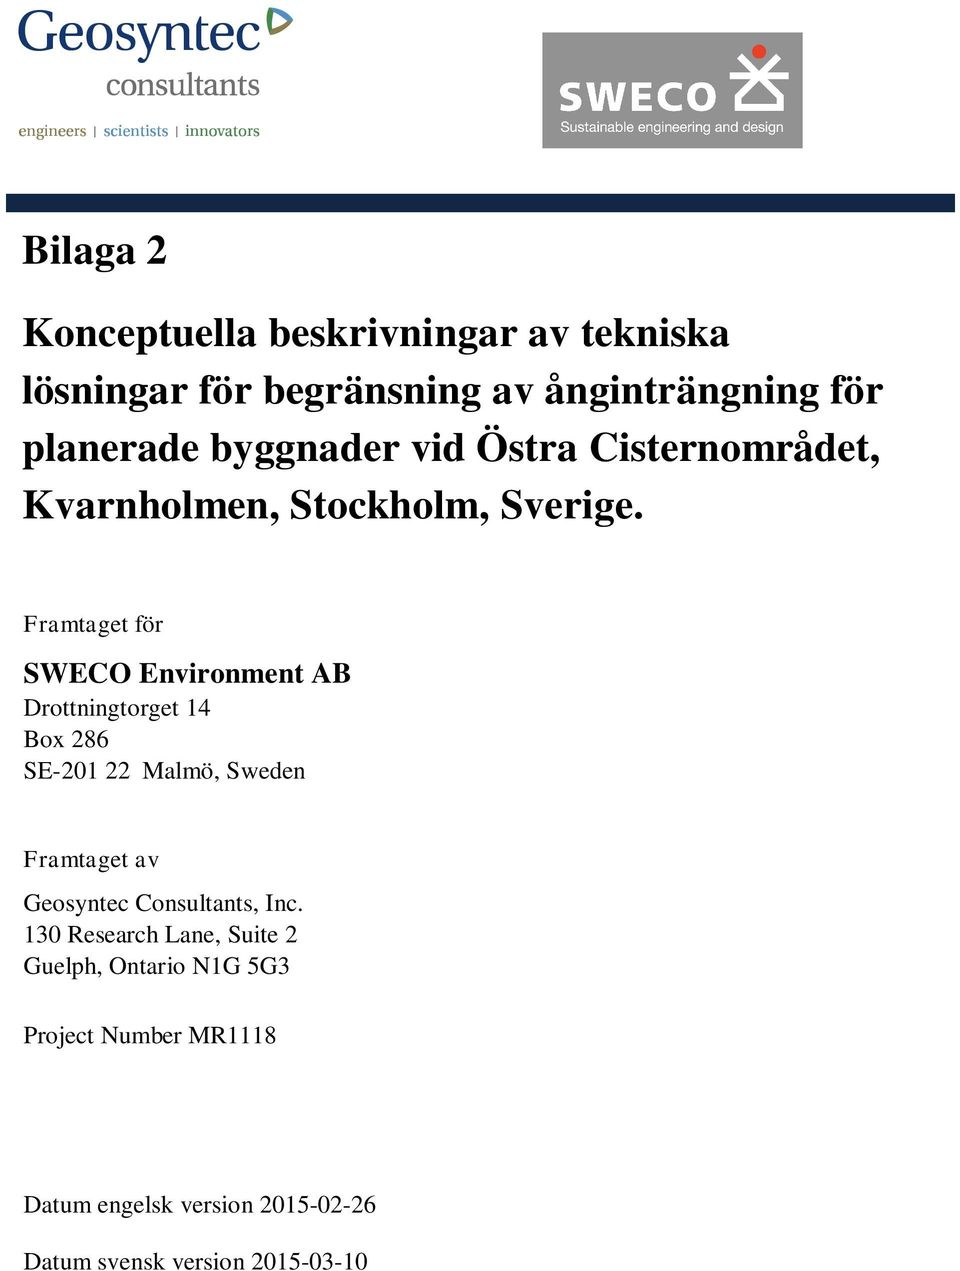 Framtaget för SWECO Environment AB Drottningtorget 14 Box 286 SE-201 22 Malmö, Sweden Framtaget av Geosyntec